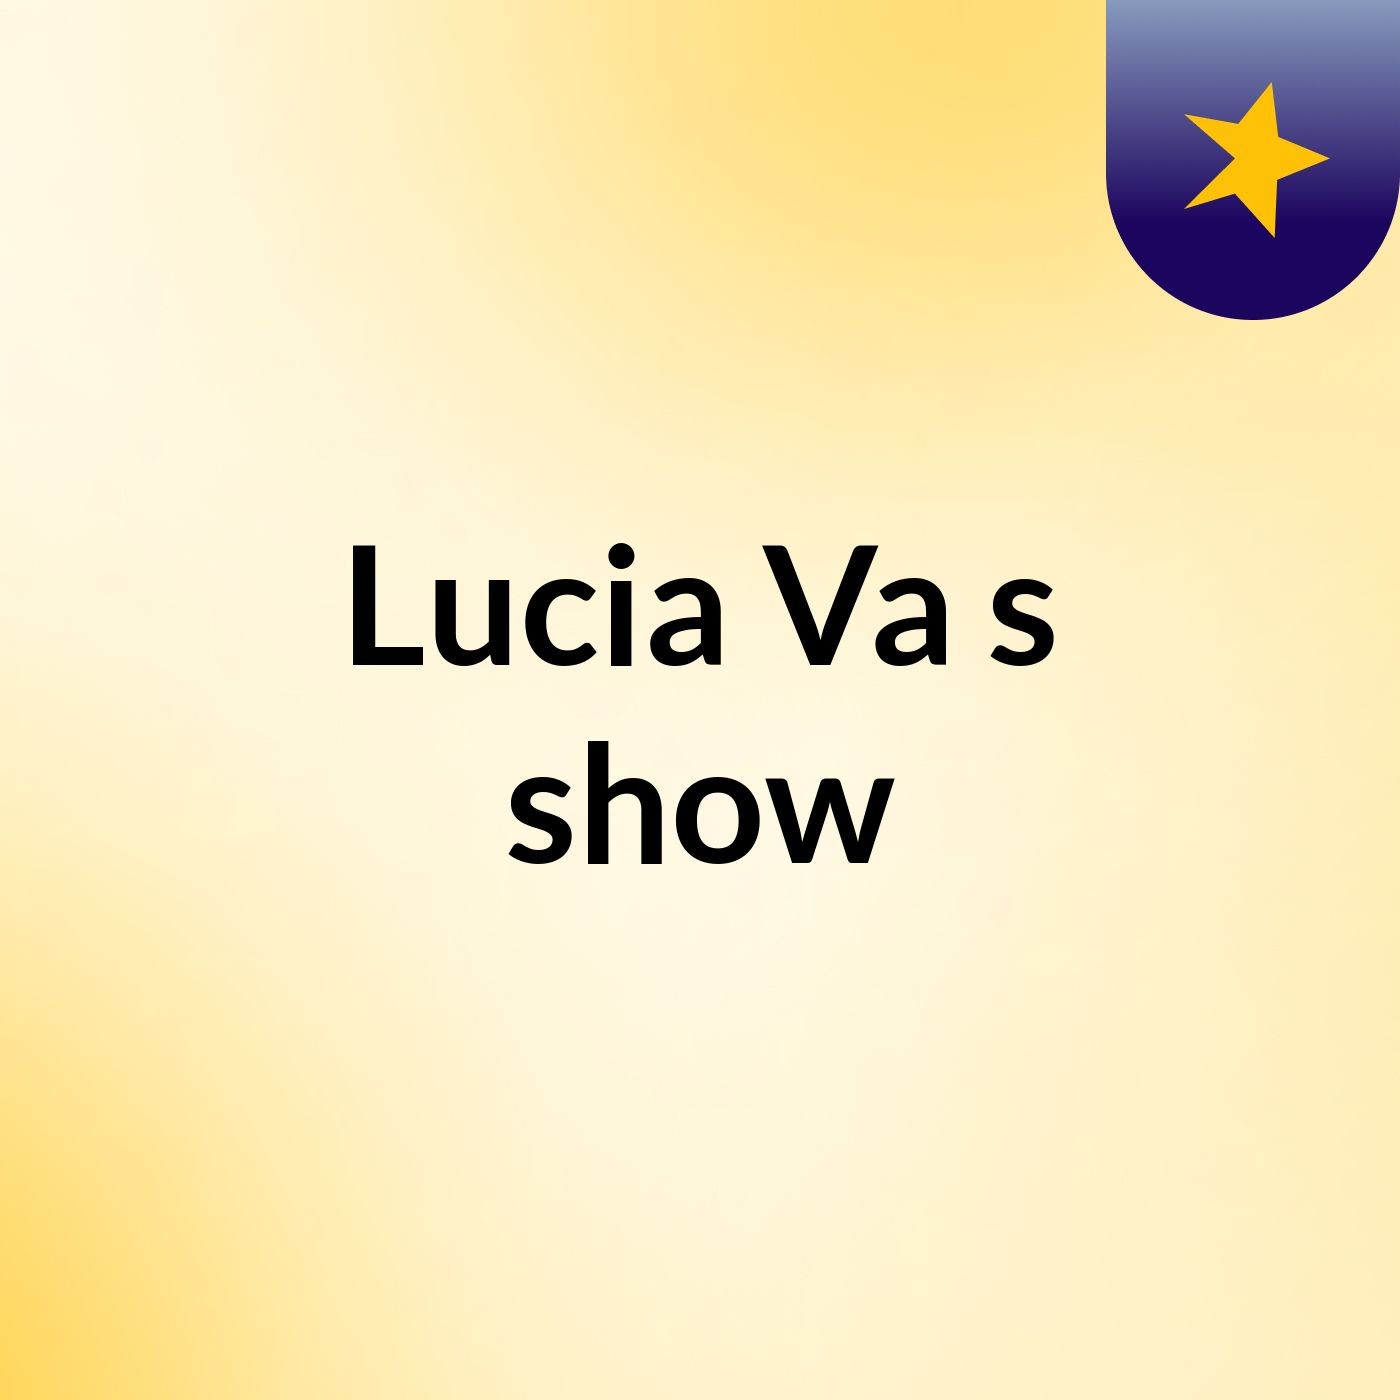 Lucia Va's show